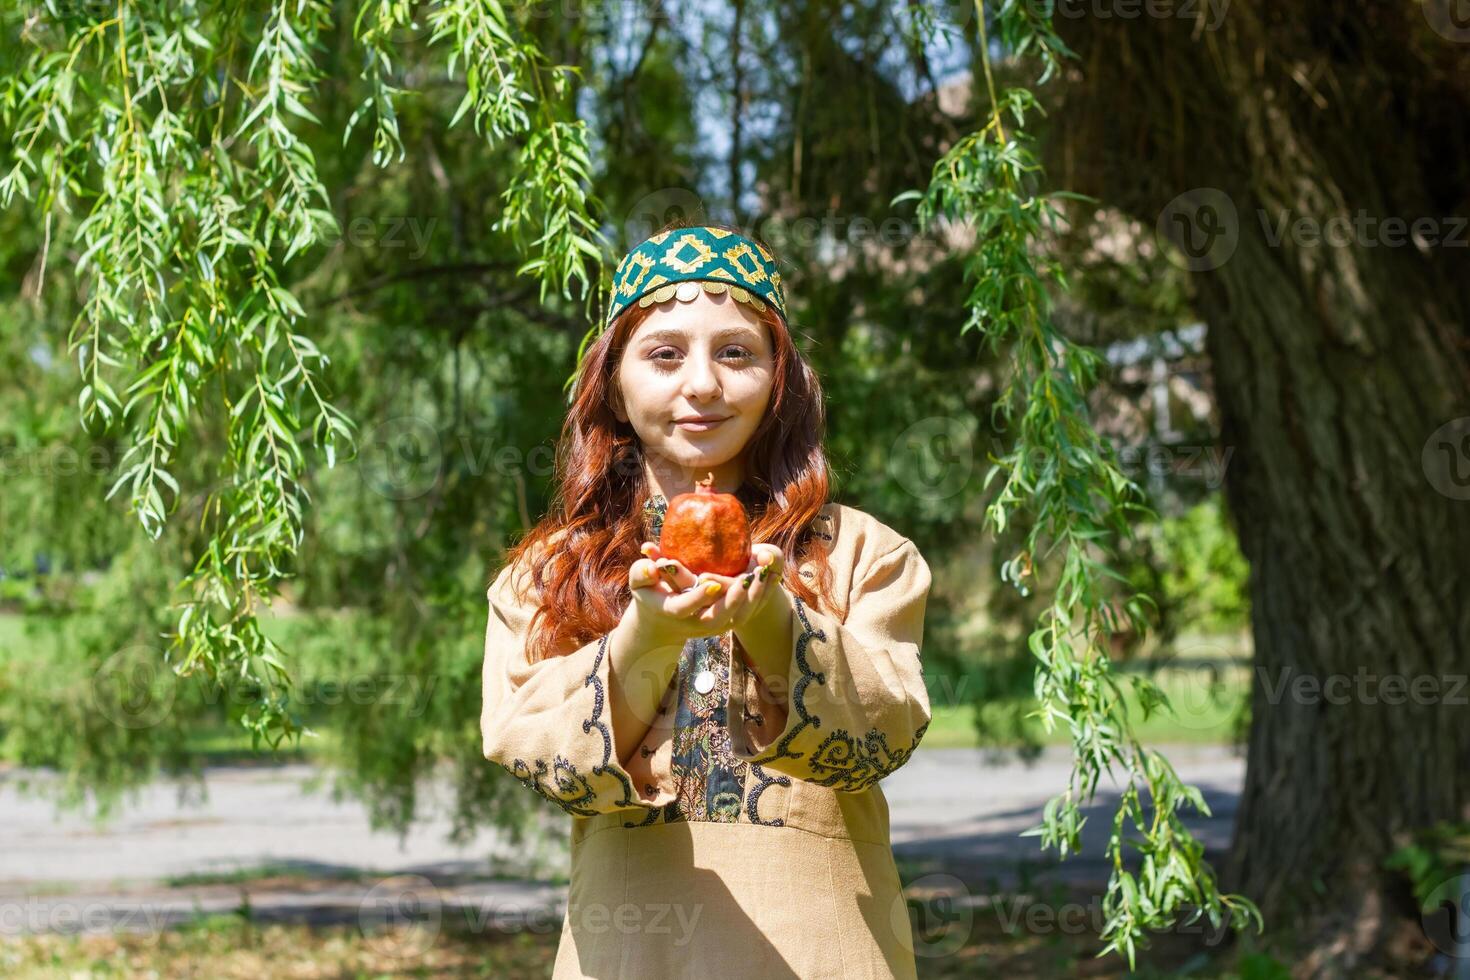 armeniska ung kvinna i traditionell kläder i de natur i sommar foto